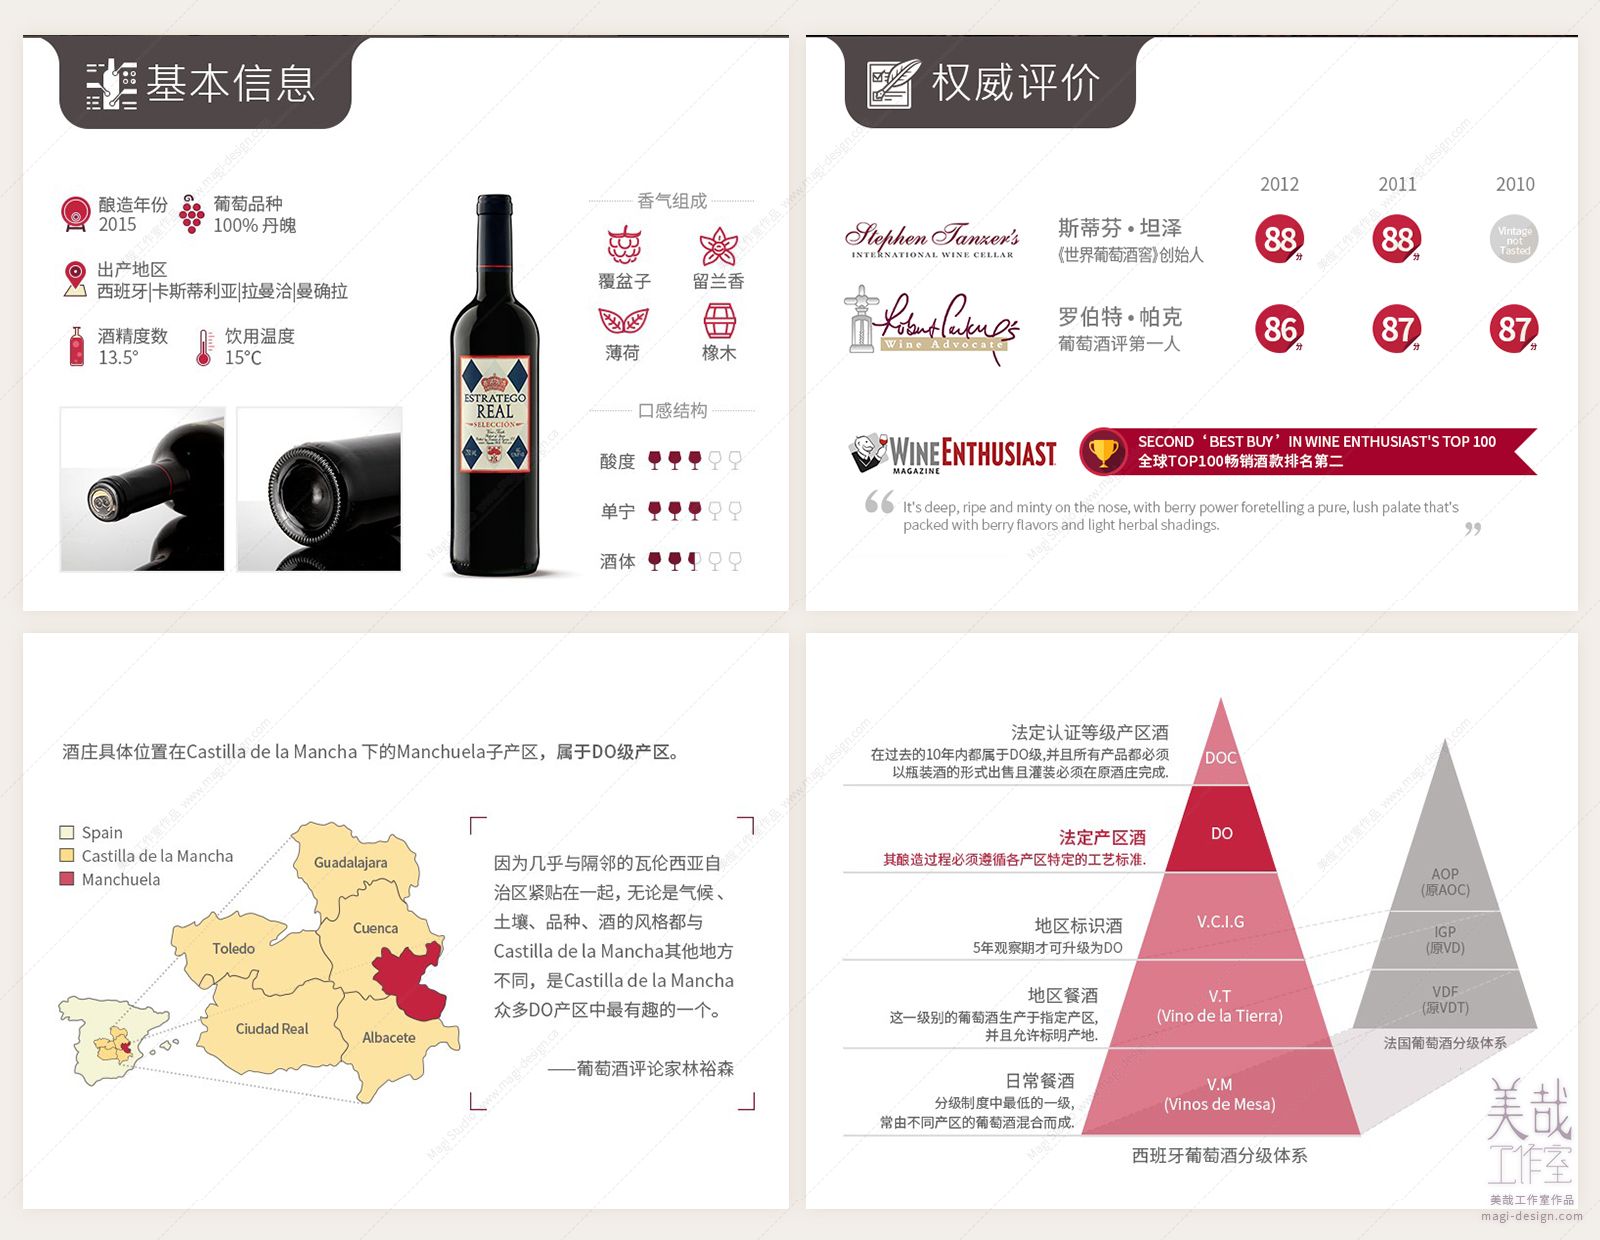 葡萄酒产品信息图设计图-局部：基本信息、权威评价、产区和等级